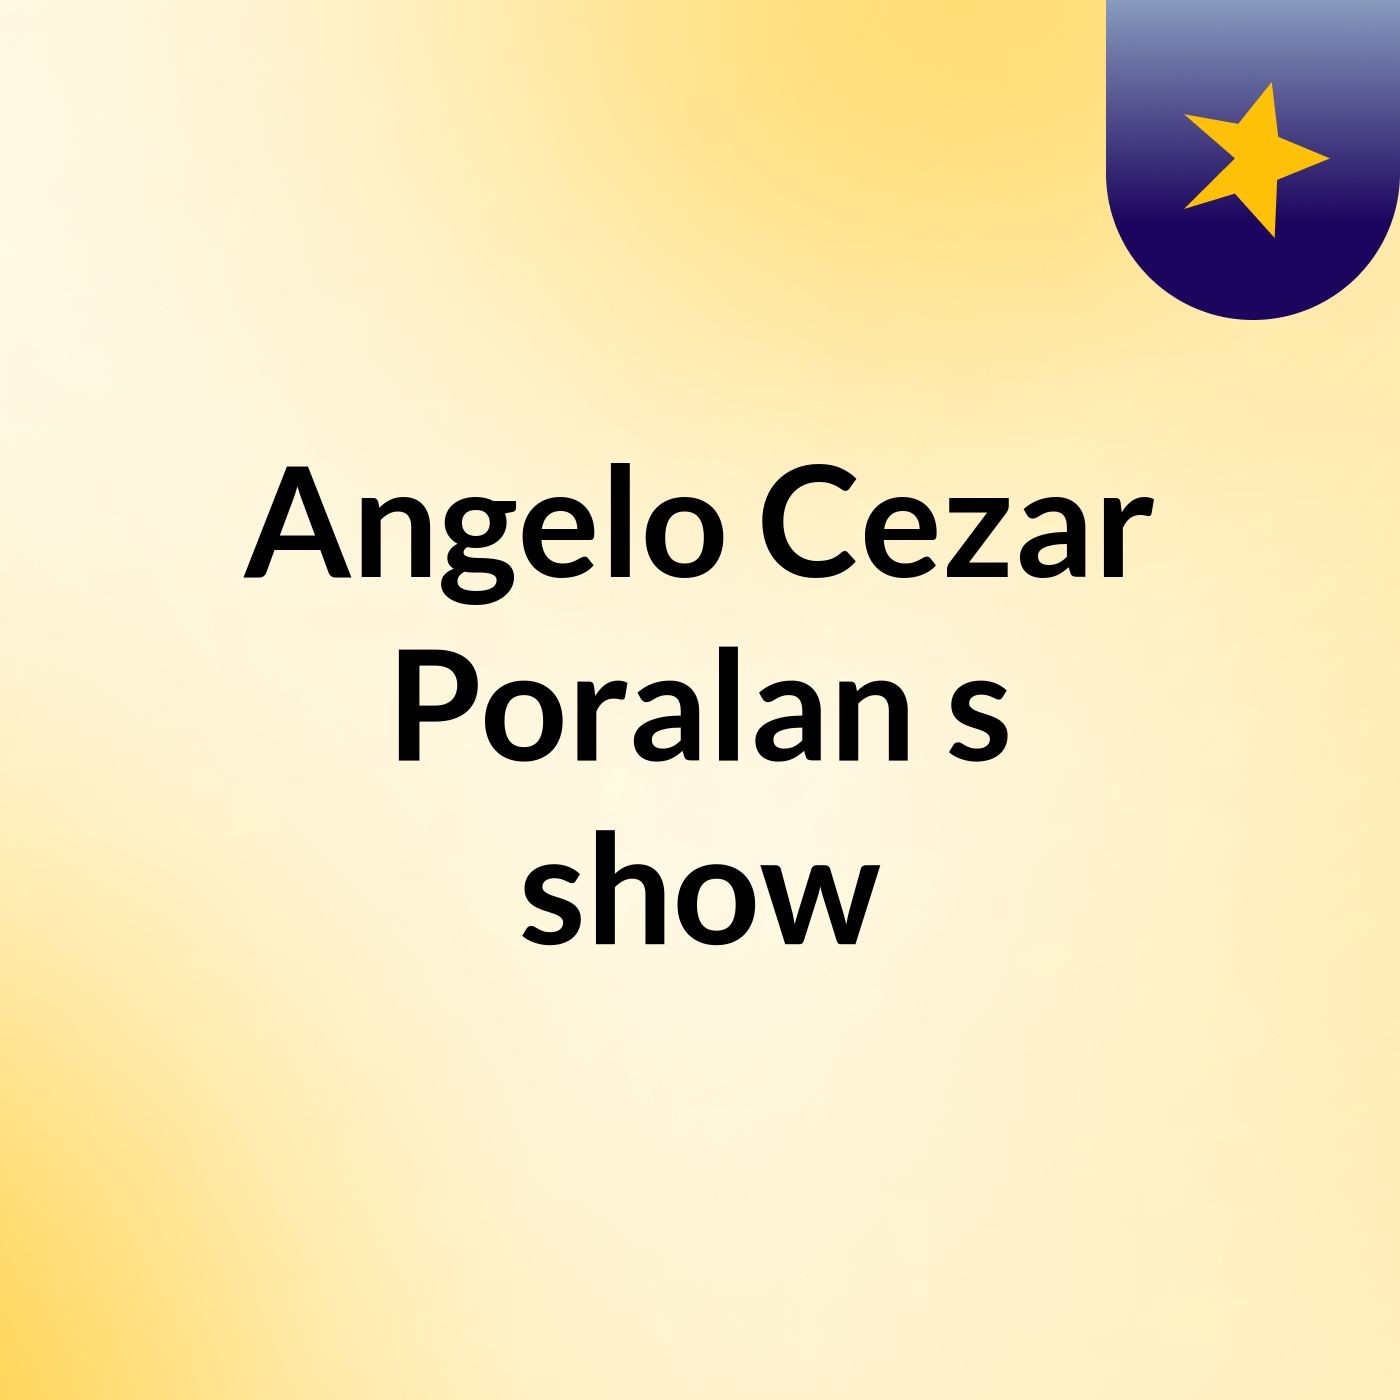 Angelo Cezar Poralan's show